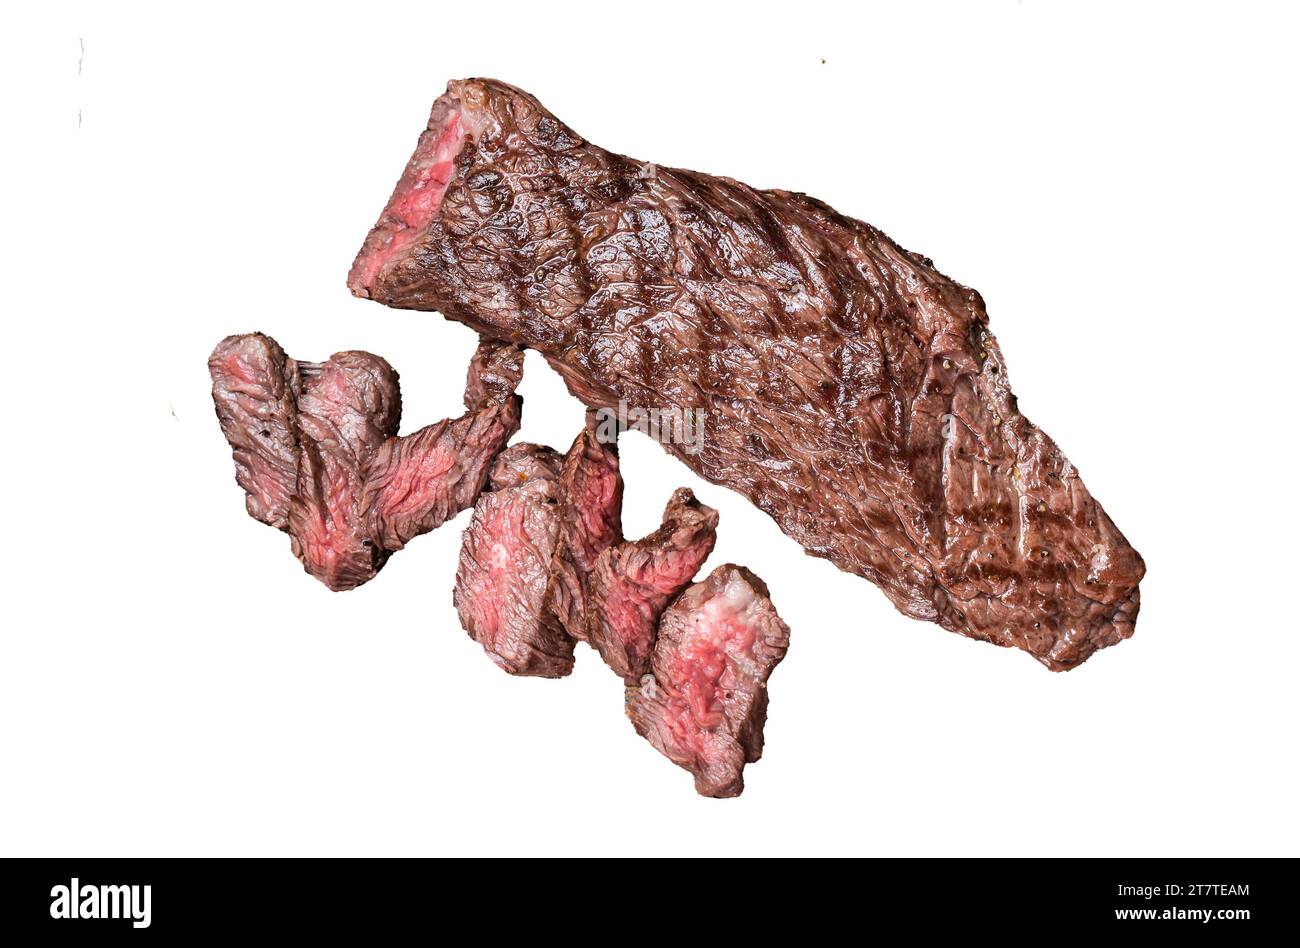 Grillé Medium rare machette ou jupe steak de viande de bœuf sur planche à découper en bois. Isolé, fond blanc Banque D'Images